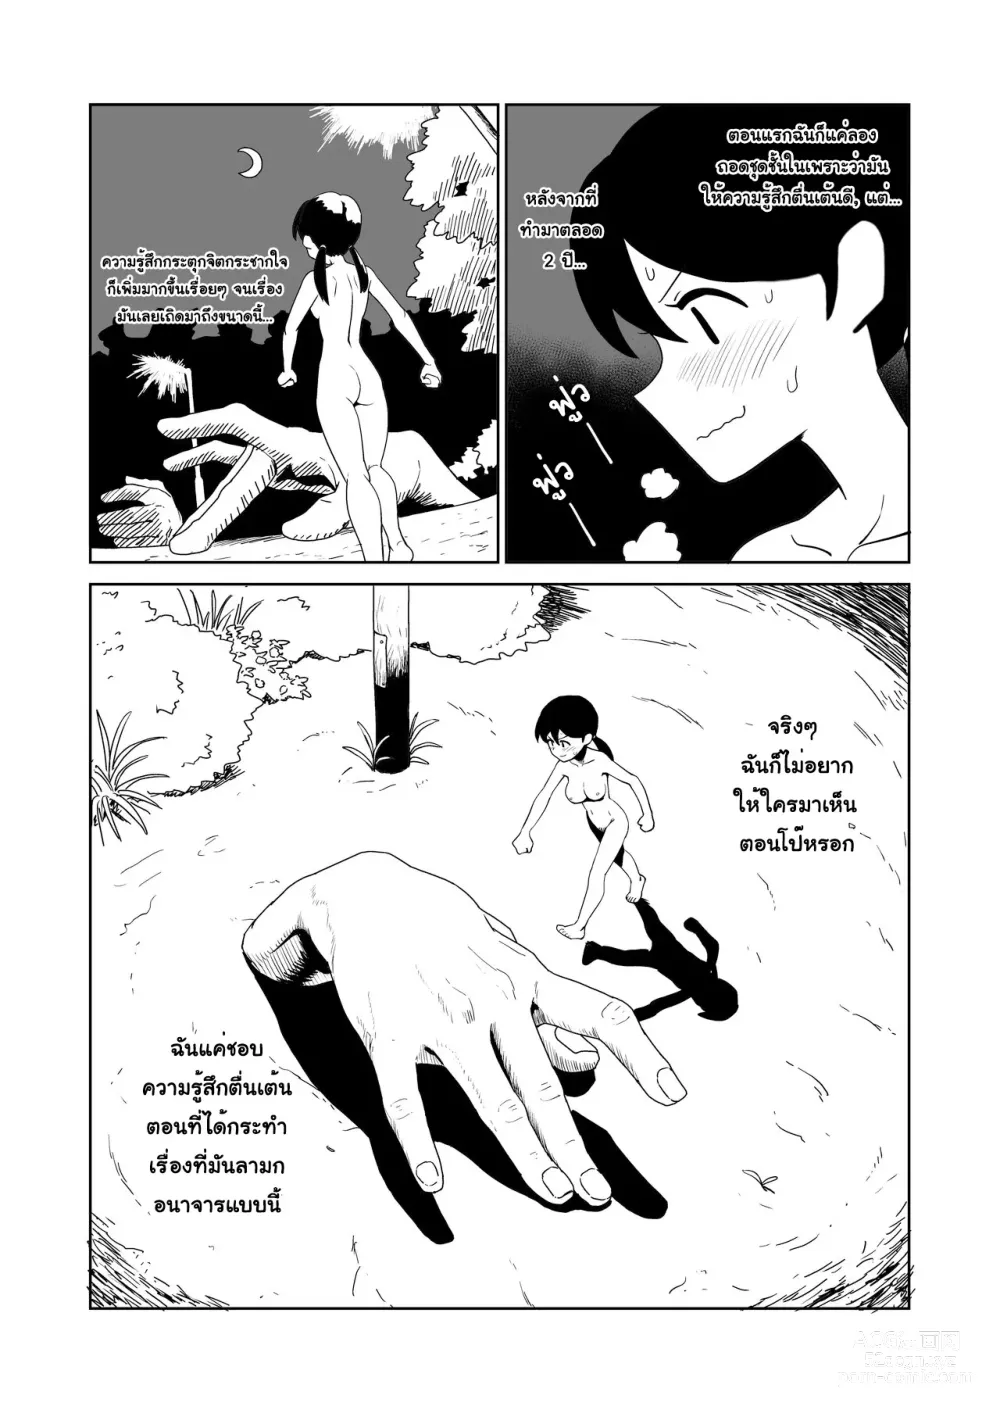 Page 5 of doujinshi Yoru, Kouen, Roshutsu Jii. l เรื่องเสวๆ, ที่สวนสาธารณะ, ในยามค่ำคืน